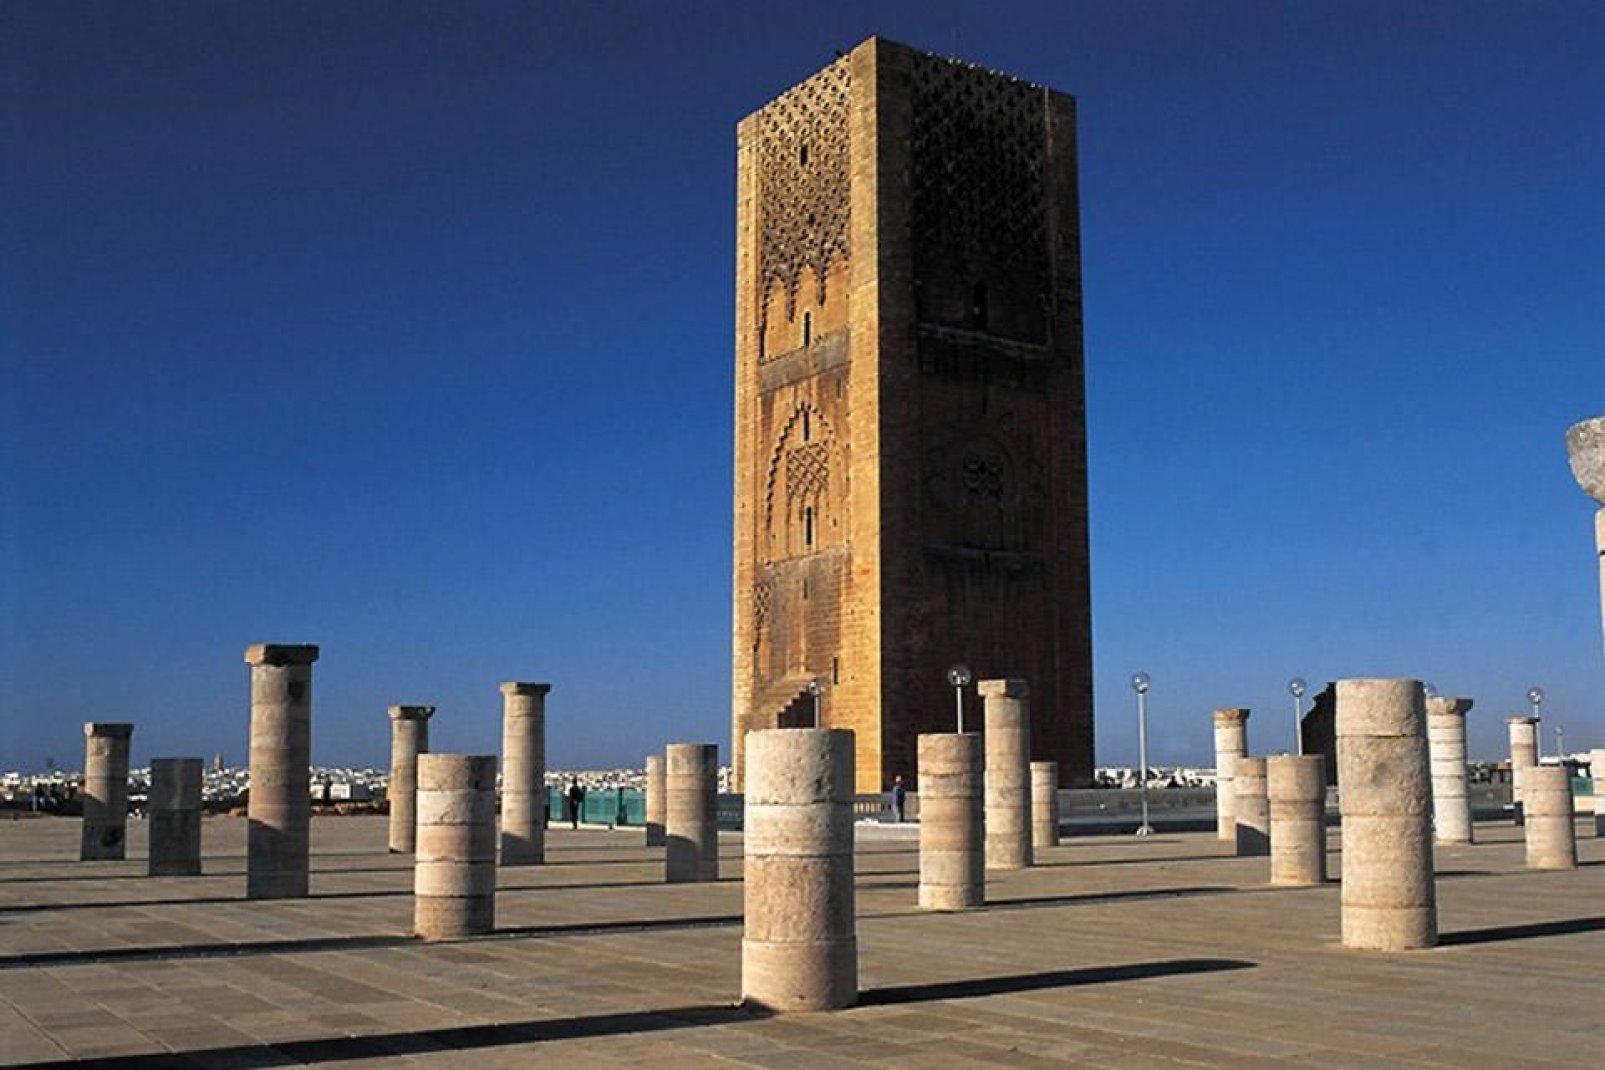 La tour Hassan reste le monument emblématique de Rabat. Ici aurait du être construite la plus grande mosquée du monde mais elle resta inachevée